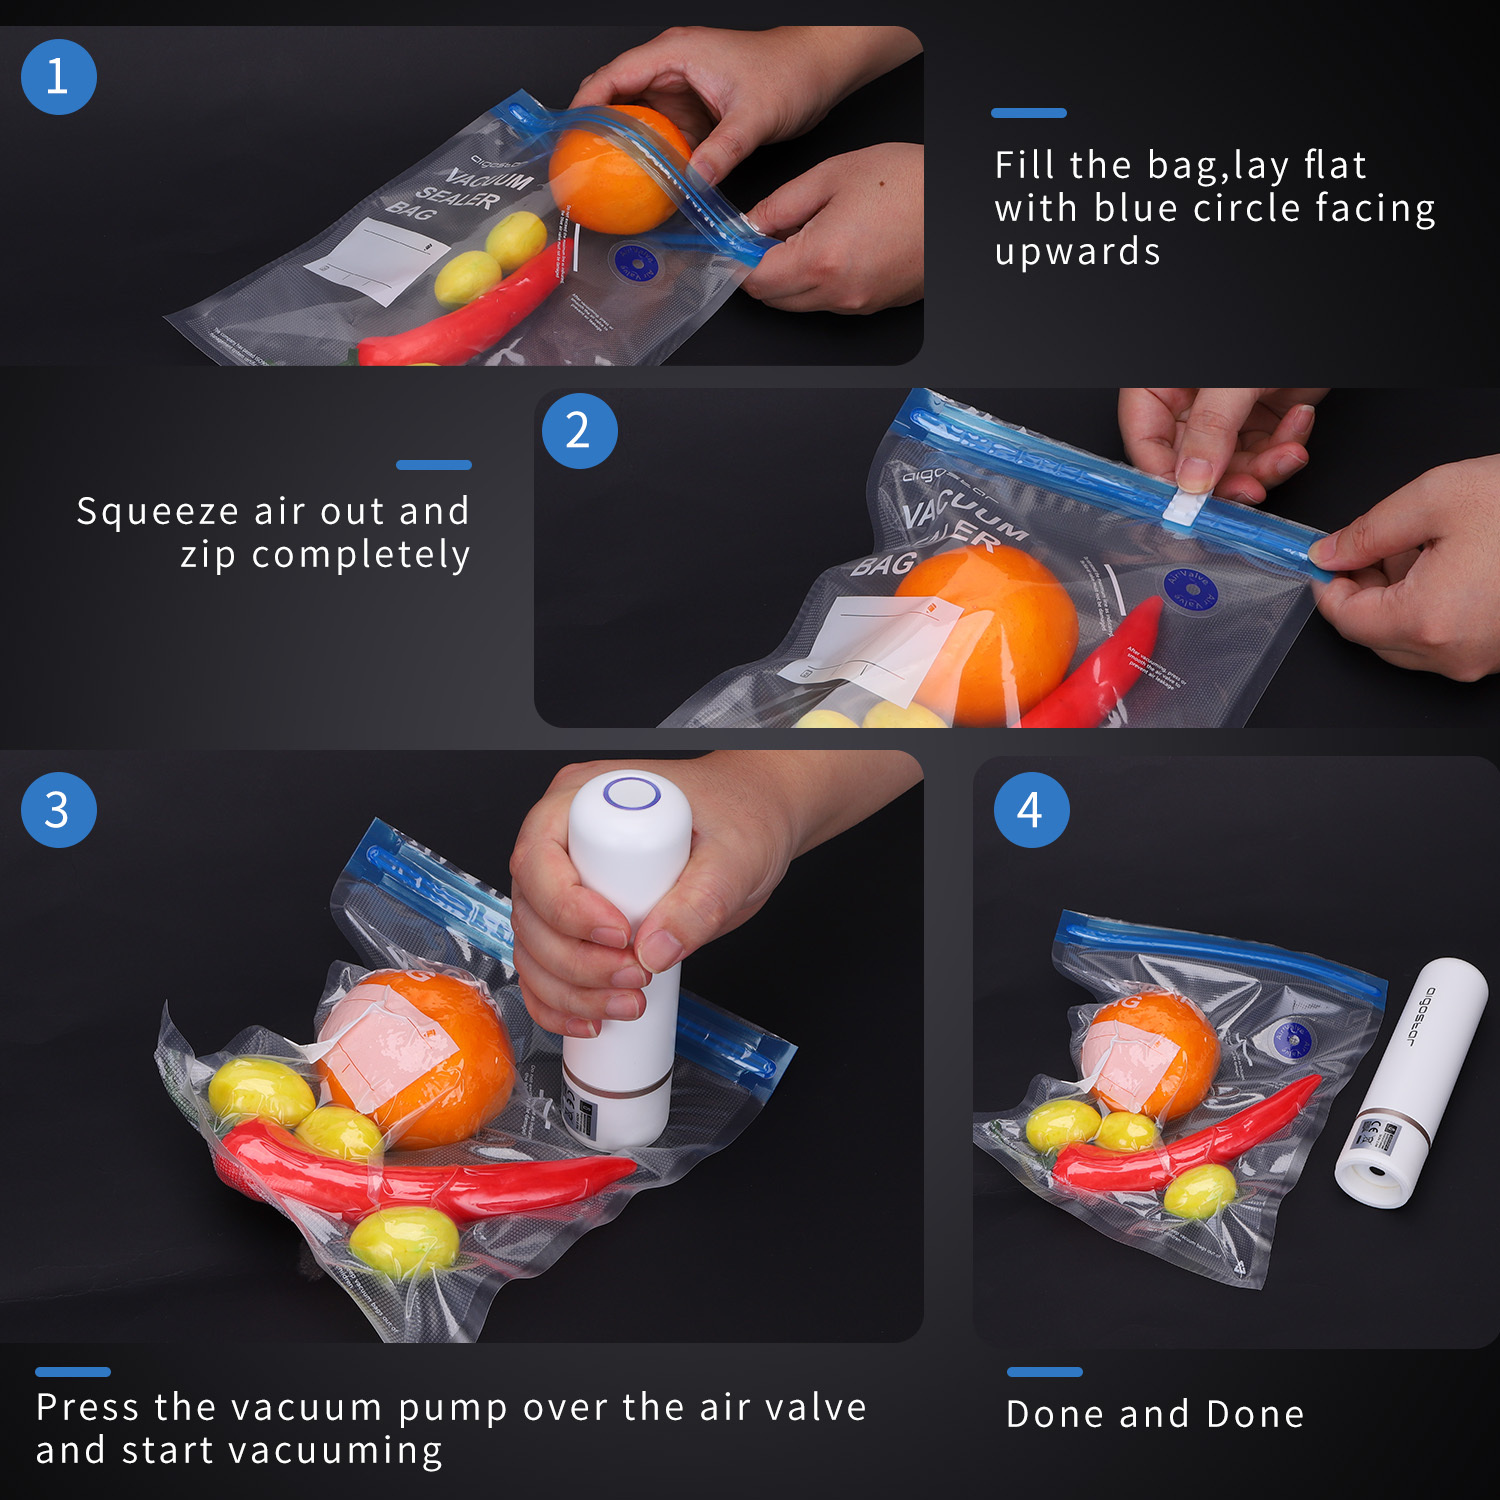 Aigostar Fresh – Pack mini pompe scelleuse sous vide automatique, sacs sous vide et récipient à vide. Faciles à utiliser, sûrs et économique. Chargement USB.